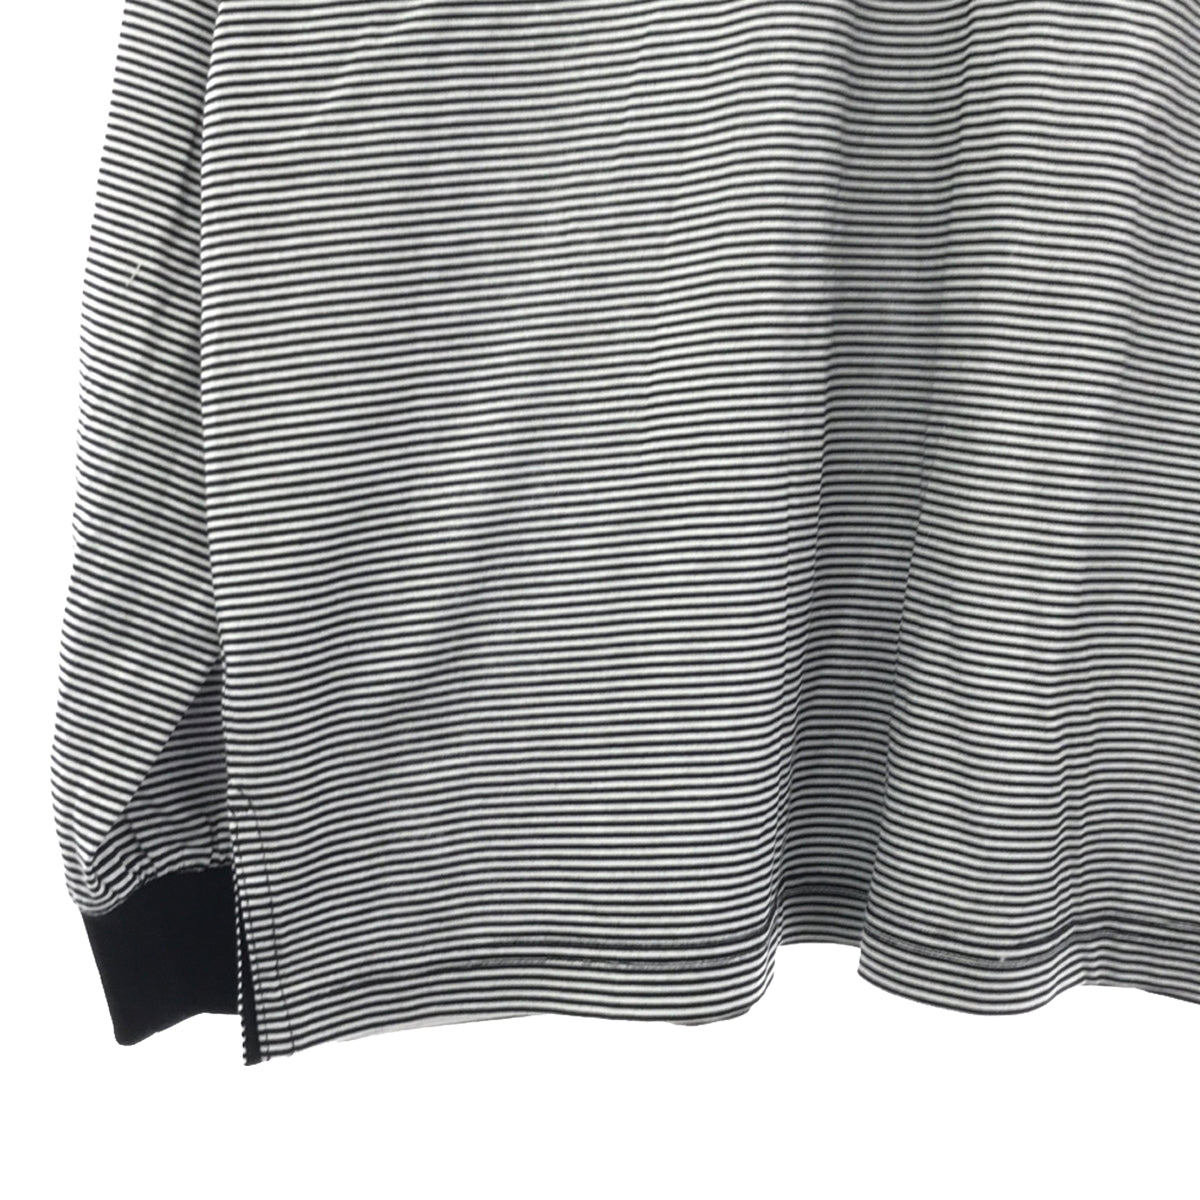 FARAH / ファーラー | Striped T-shirt / ボーダー ロゴ ポロシャツ | M | メンズ